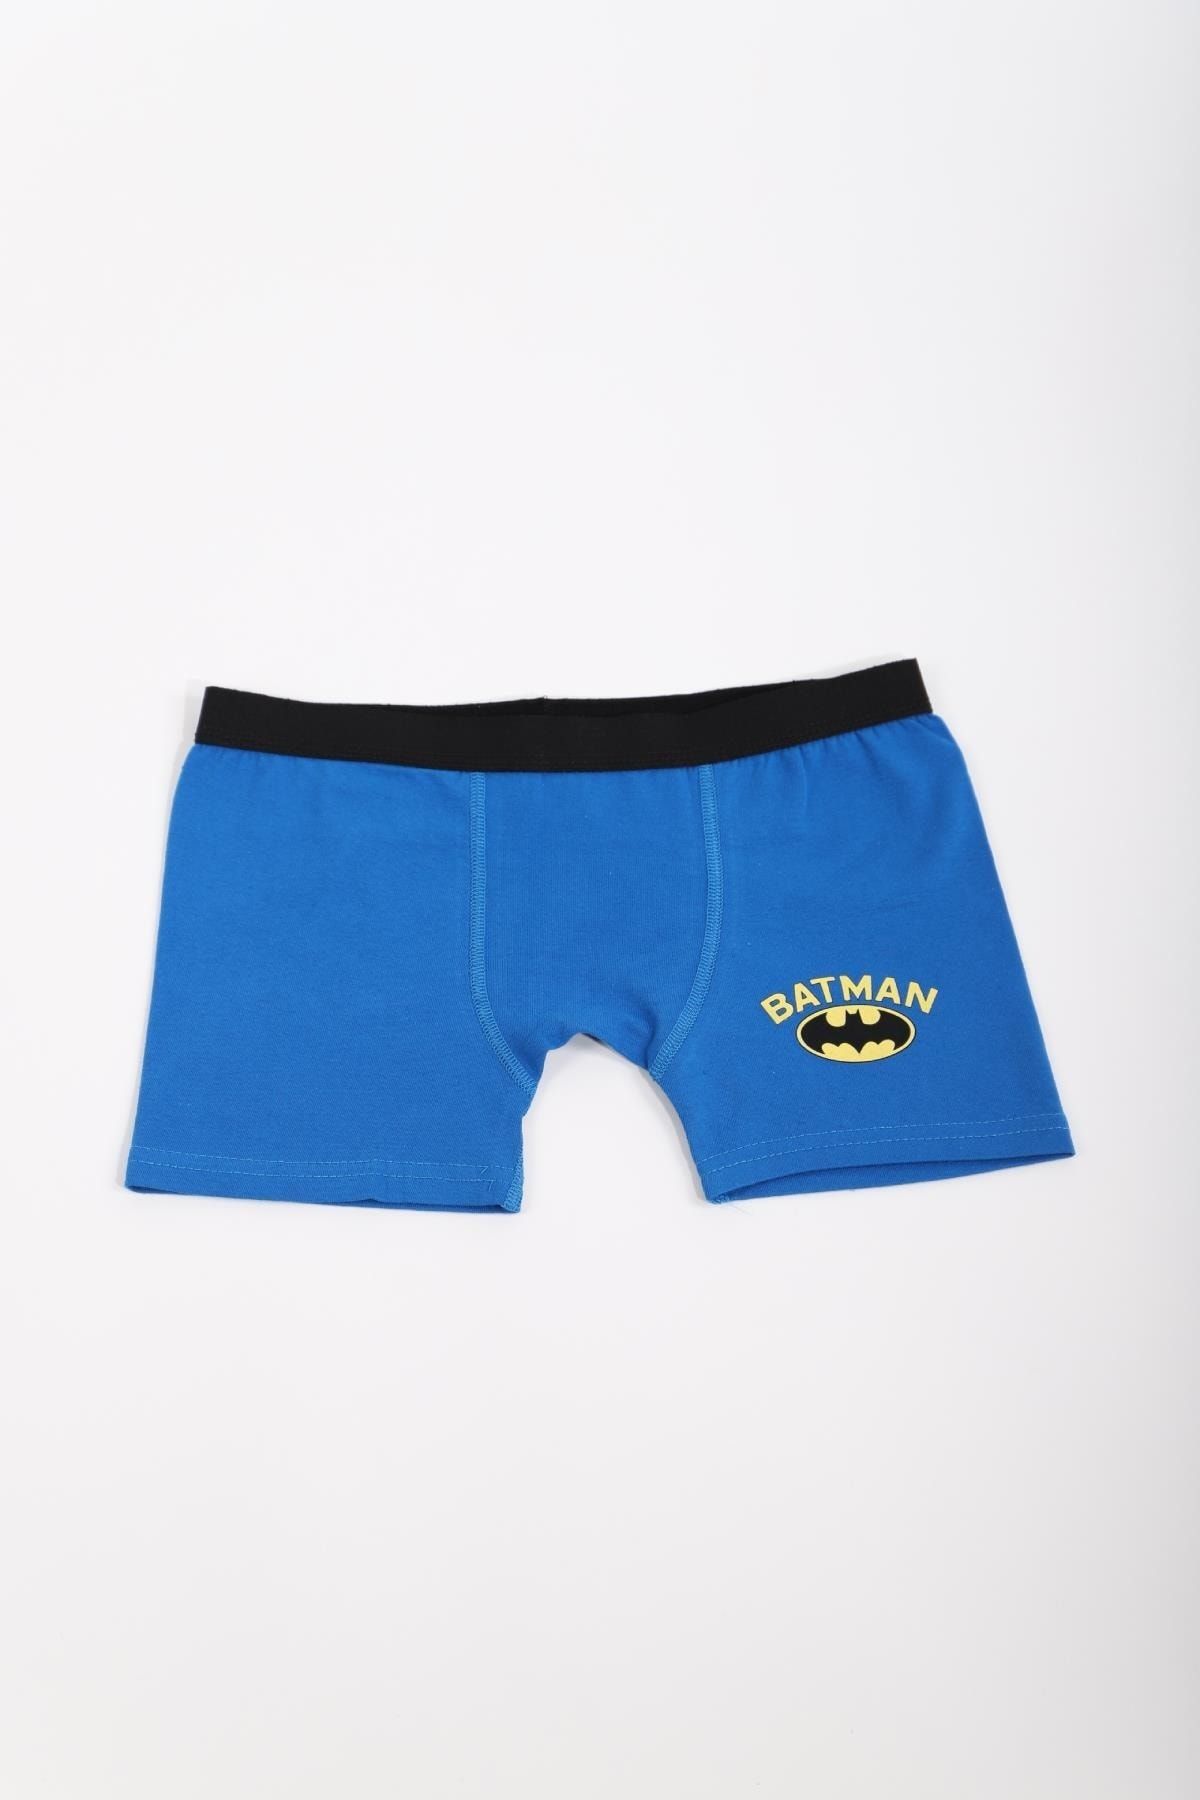 Batman Lisanslı Erkek Çocuk Mavi Baskılı Tekli Boxer Slip